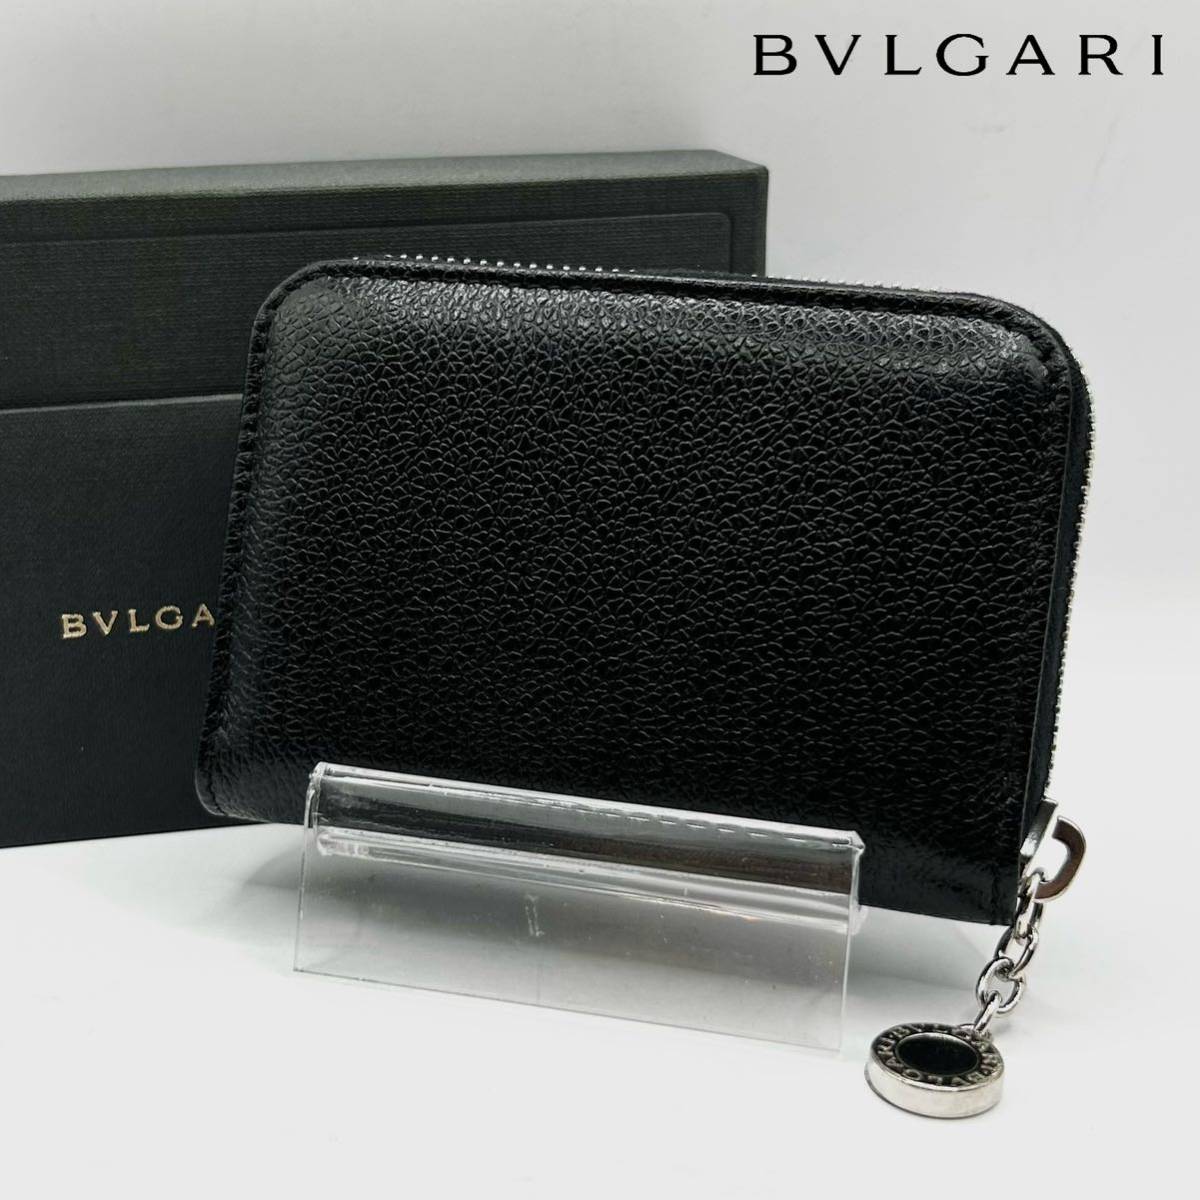 新品 BVLGARI ブルガリ コインケース 小銭入れ 財布 ラウンドジップ ロゴ レザー 本革 黒 ブラック